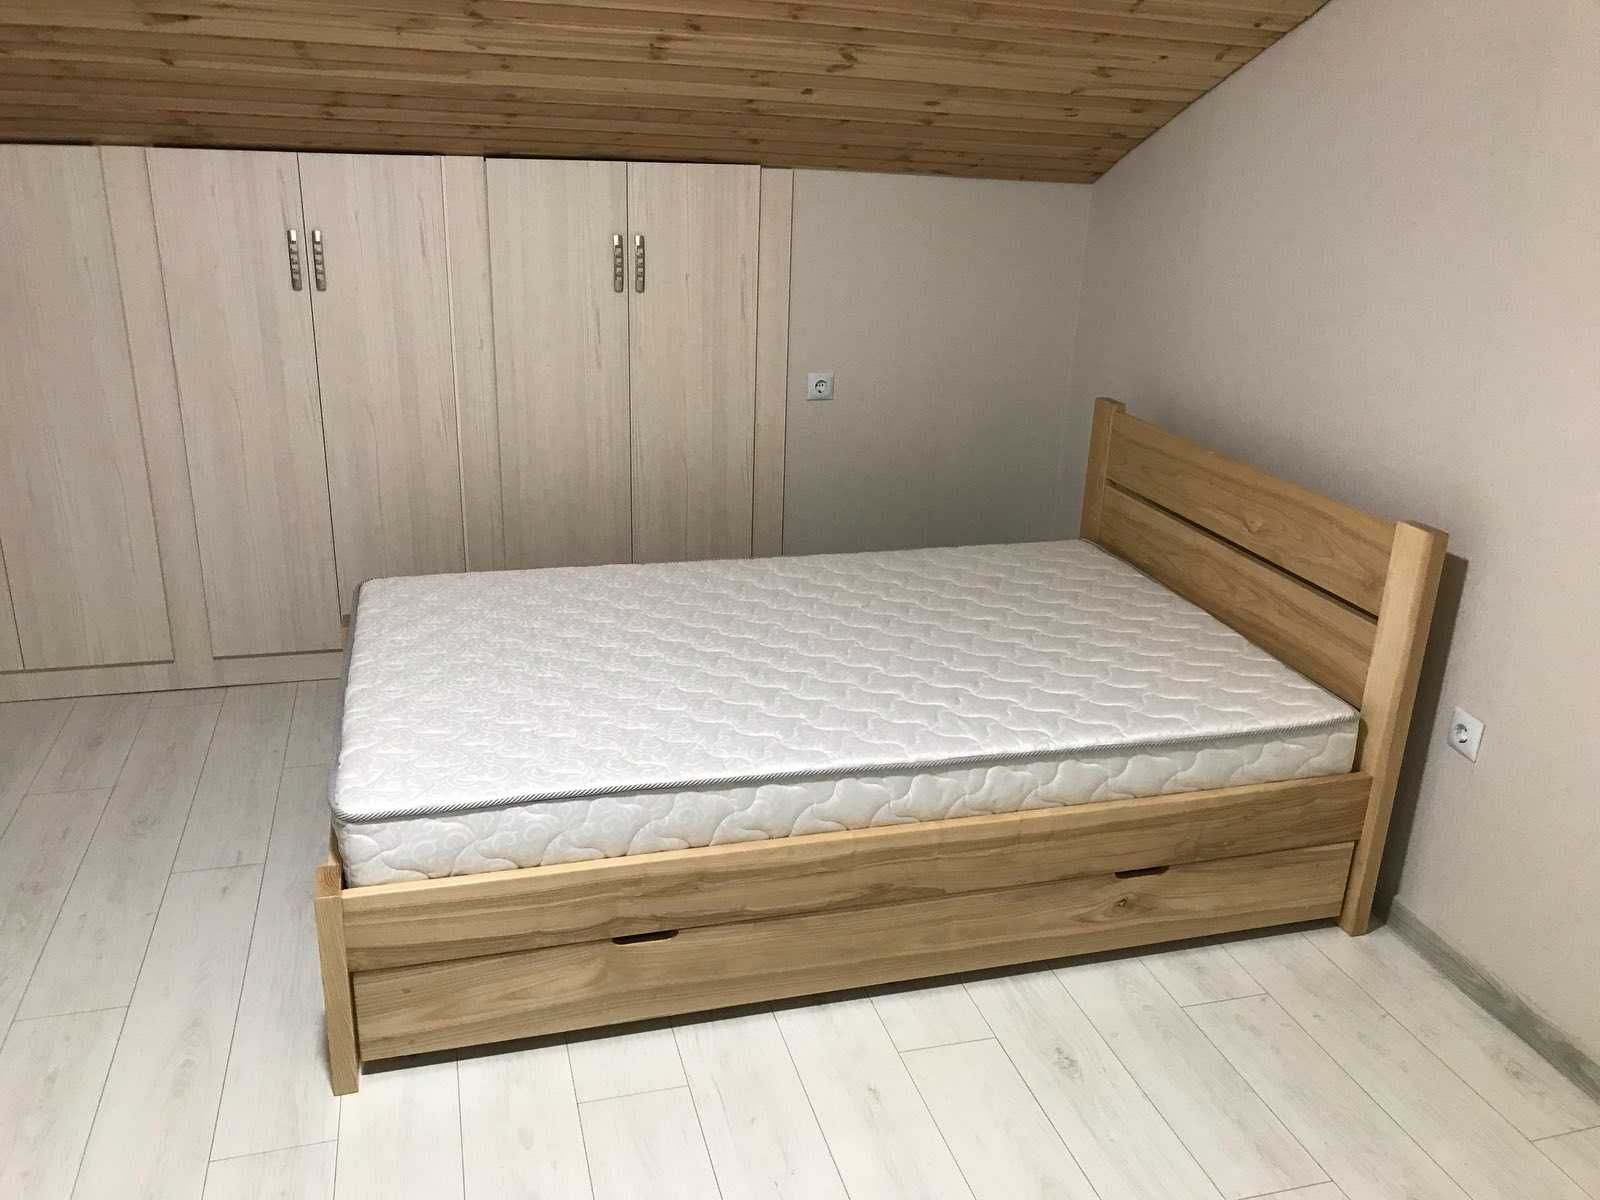 Ліжко Атлас двоспальне 160*200 дерев'яне/Кровать дерев'янная